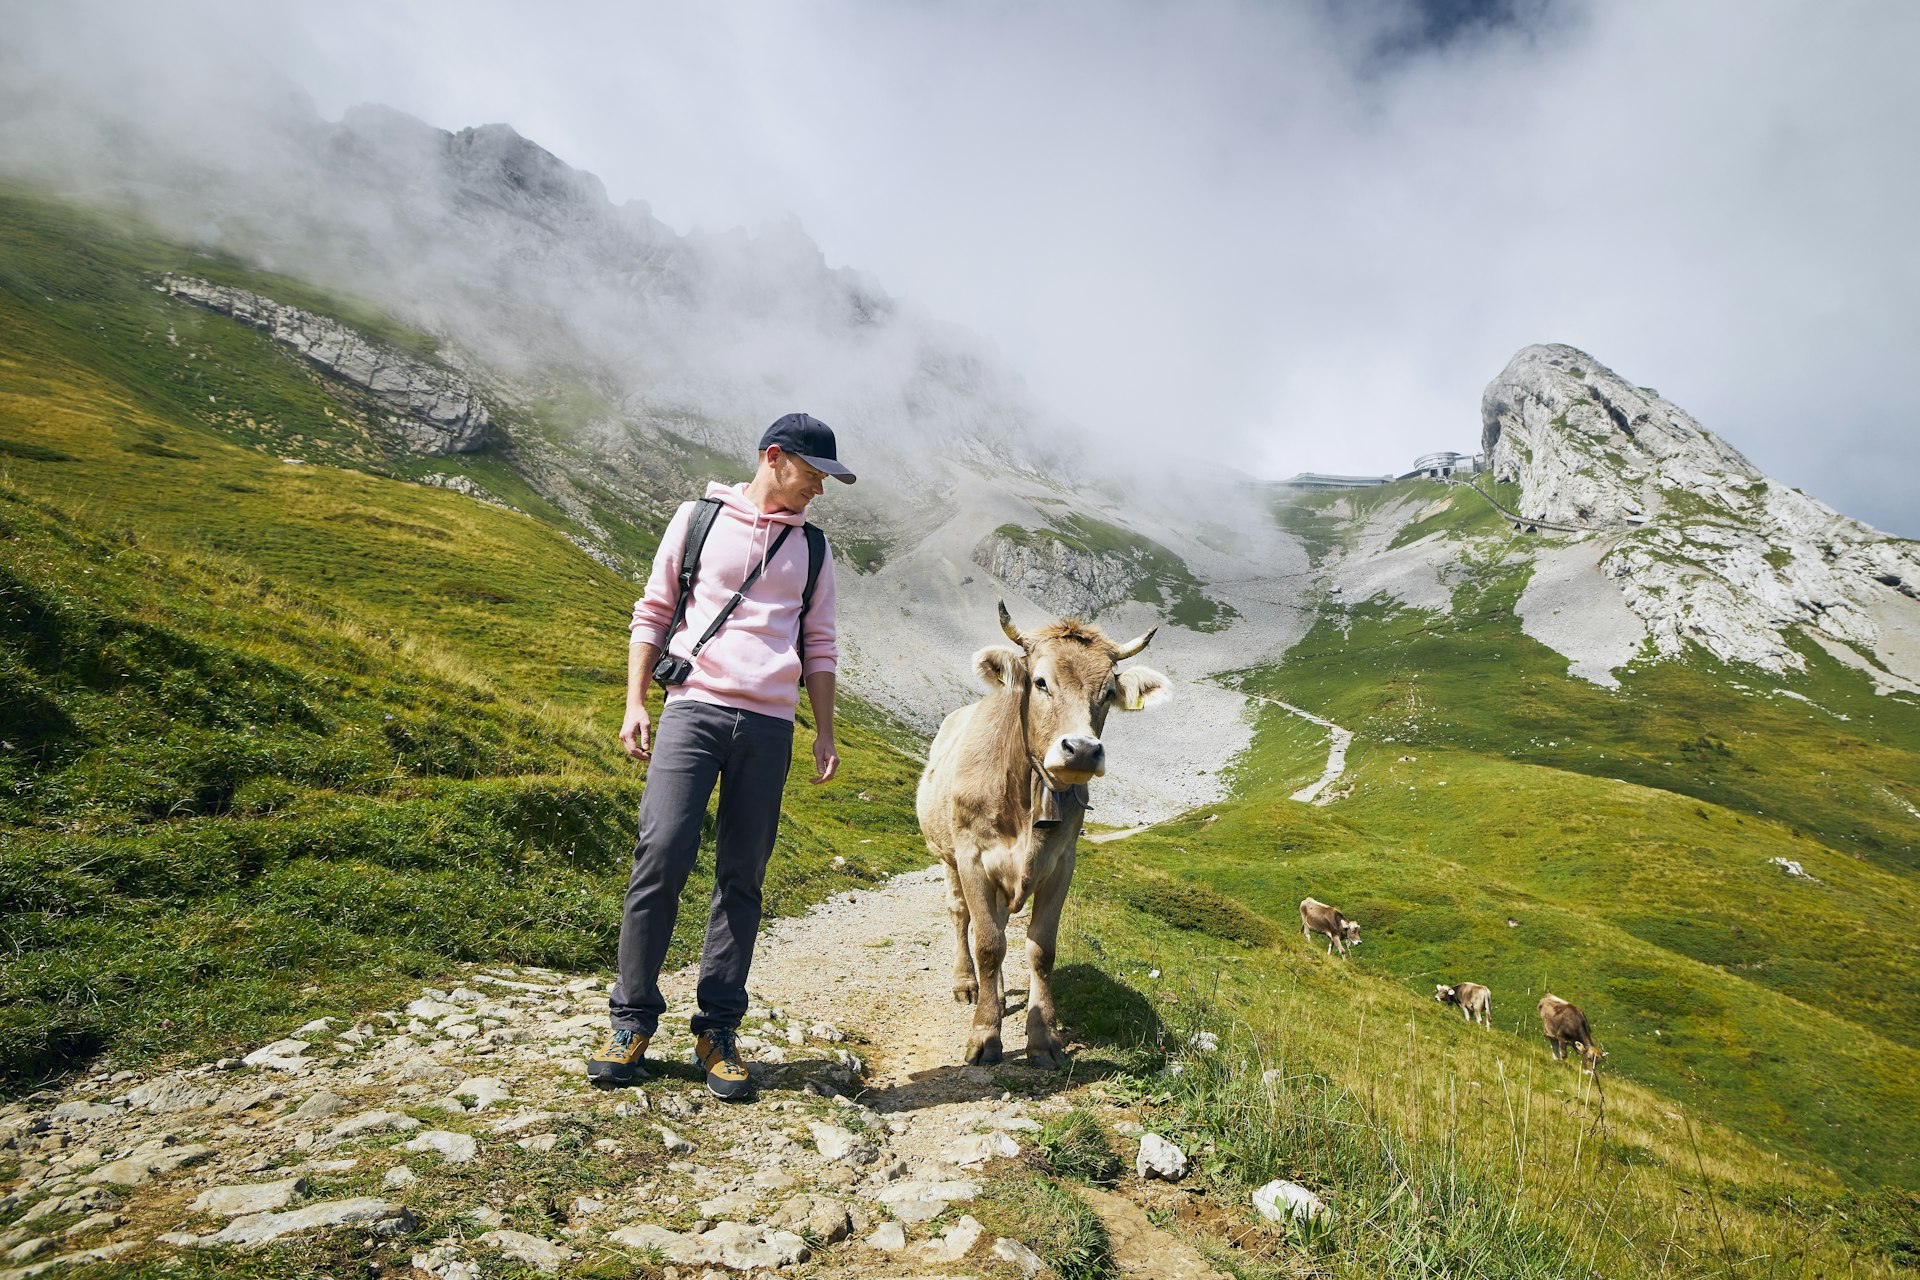 Jovem andando com uma vaca em uma trilha de montanha, Monte Pilatus, Lucerna, Suíça